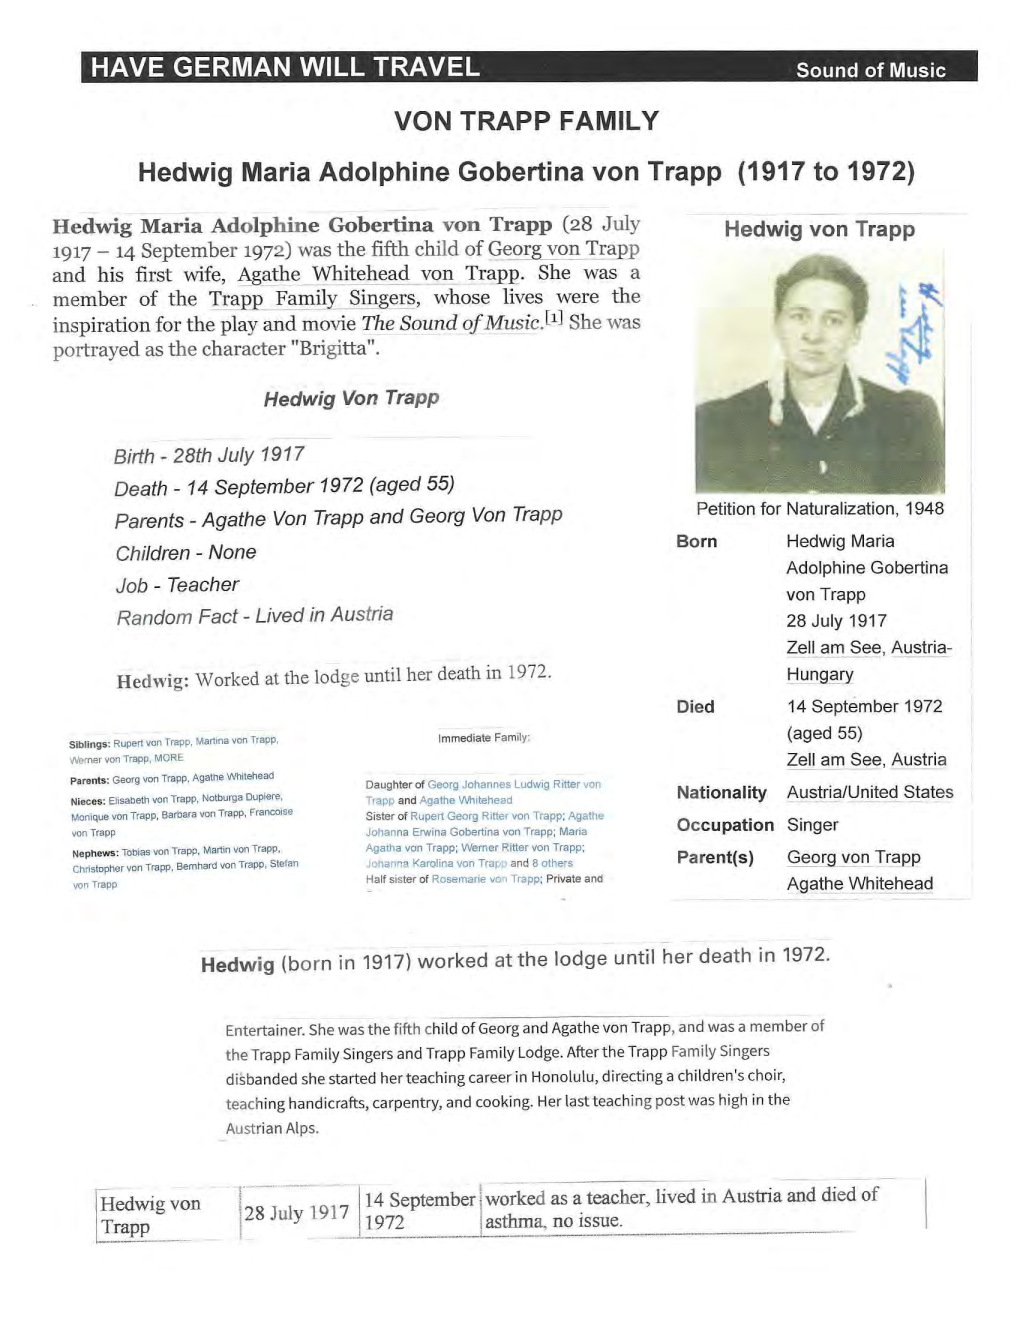 VON TRAPP FAMILY Hedwig Maria Adolphine Gobertina Von Trapp (1917 to 1972)